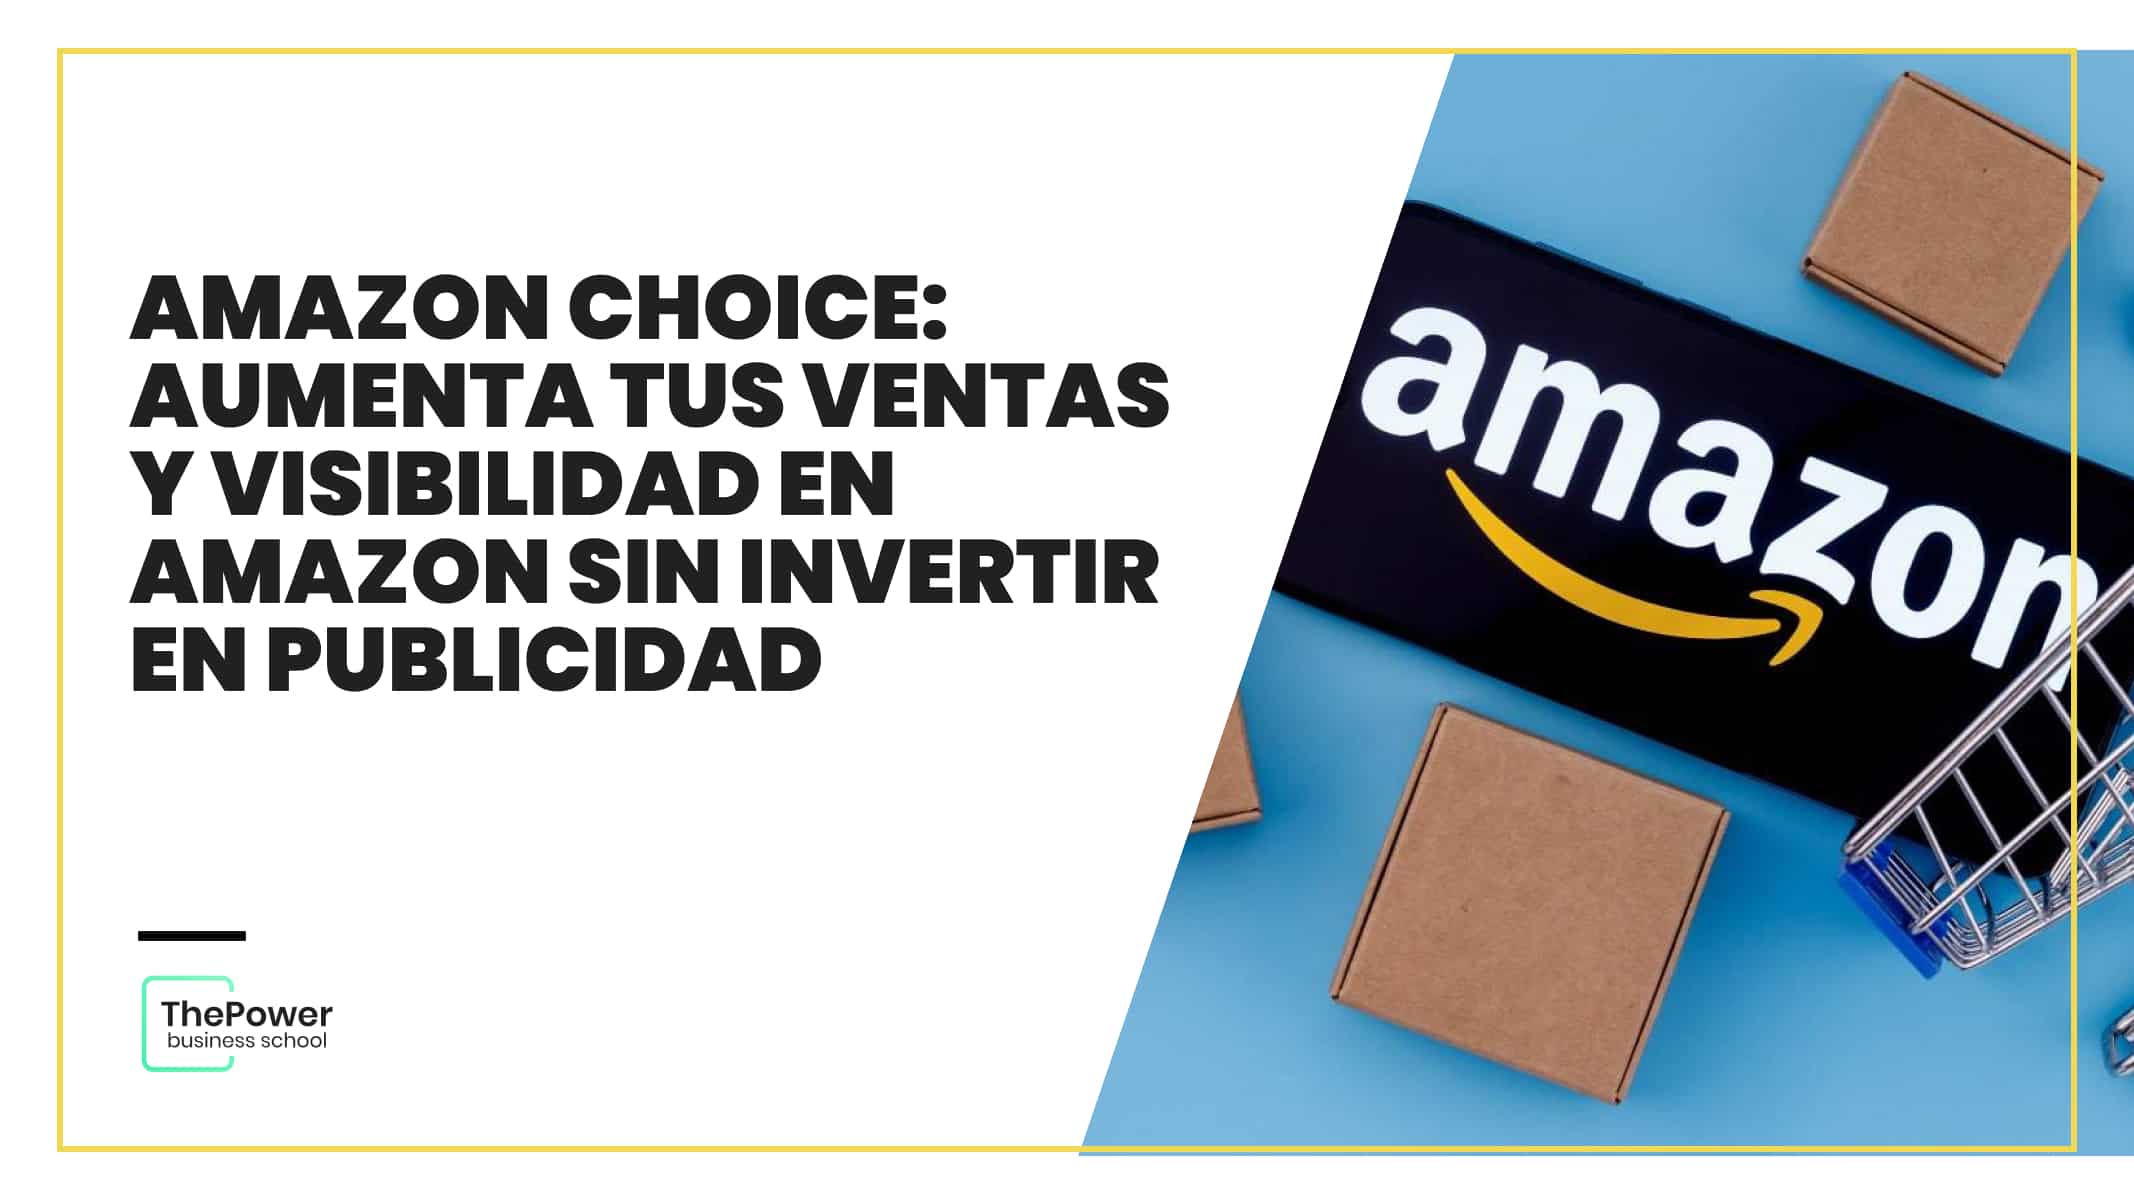 Amazon Choice: Aumenta tus ventas y visibilidad en Amazon sin invertir en publicidad